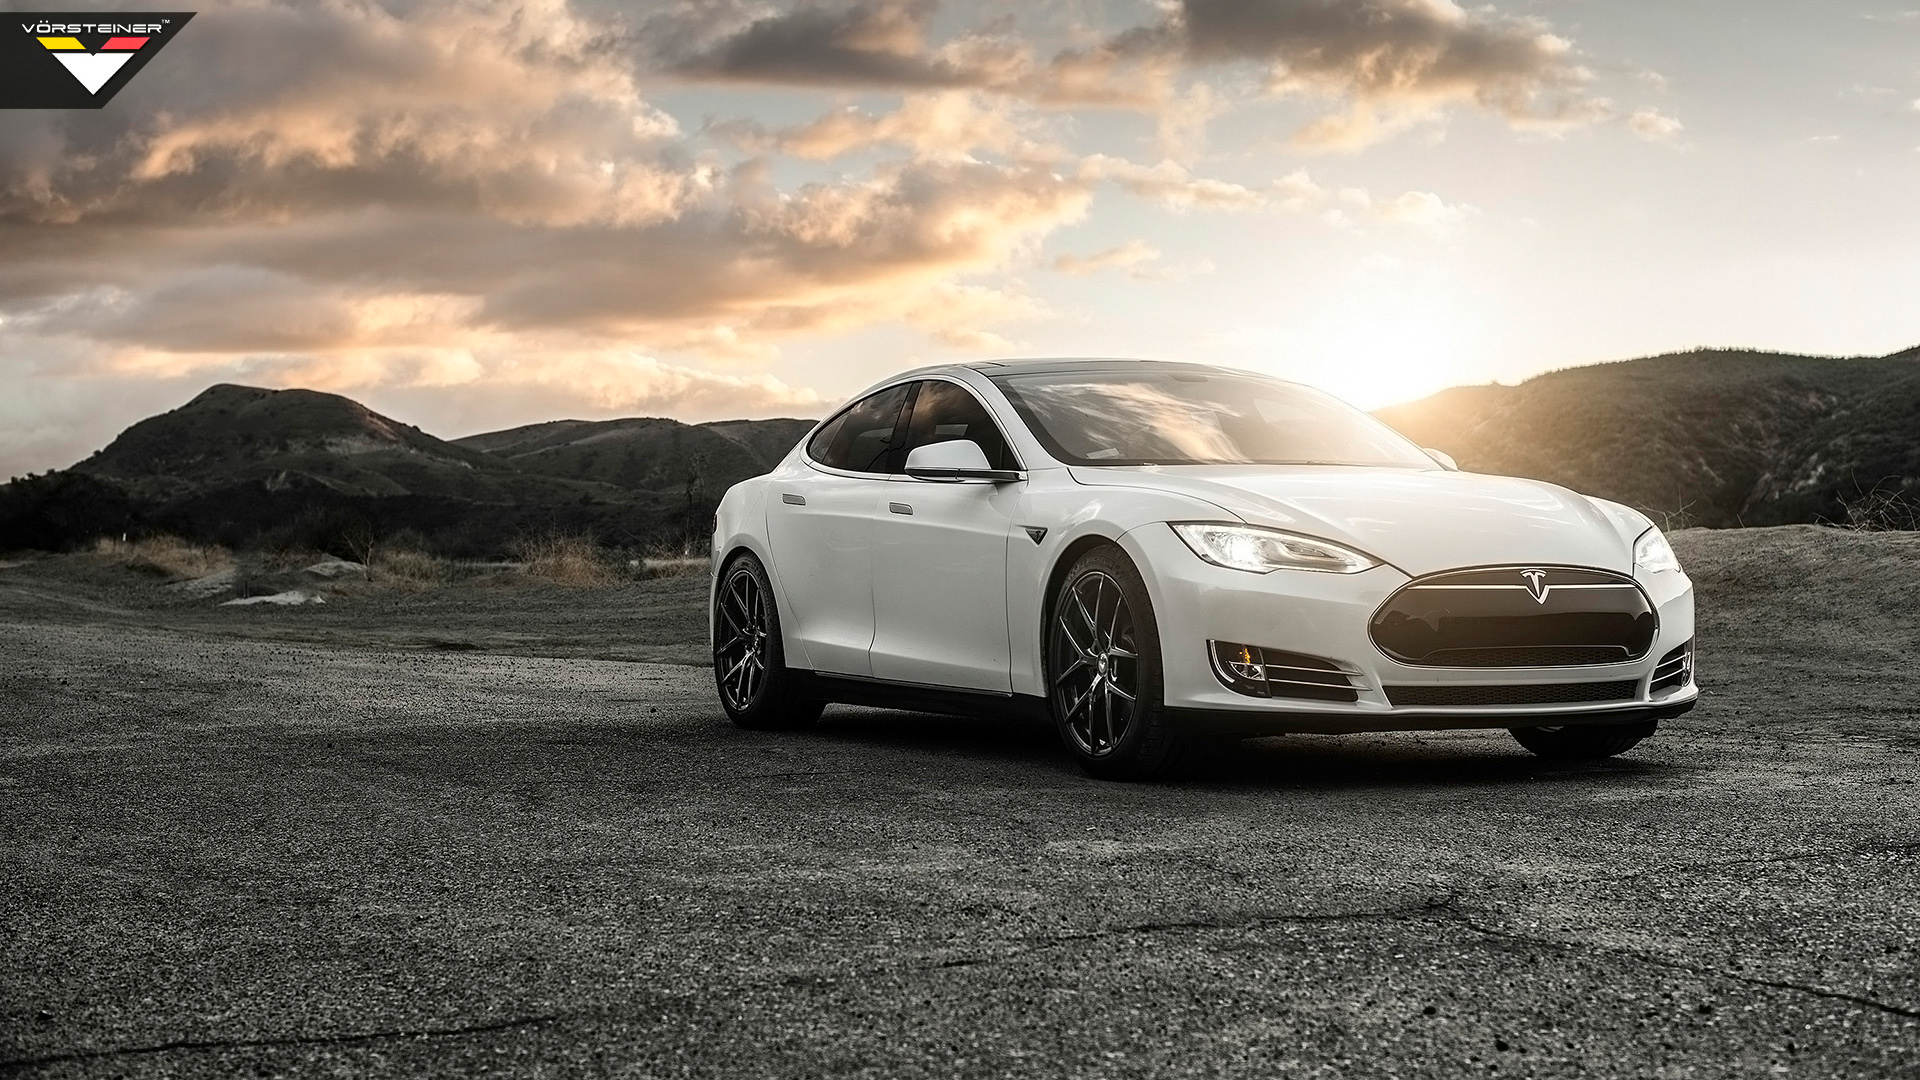 2014 Vorsteiner Tesla Model S P85 Wallpaper | HD Car Wallpapers | ID #4487